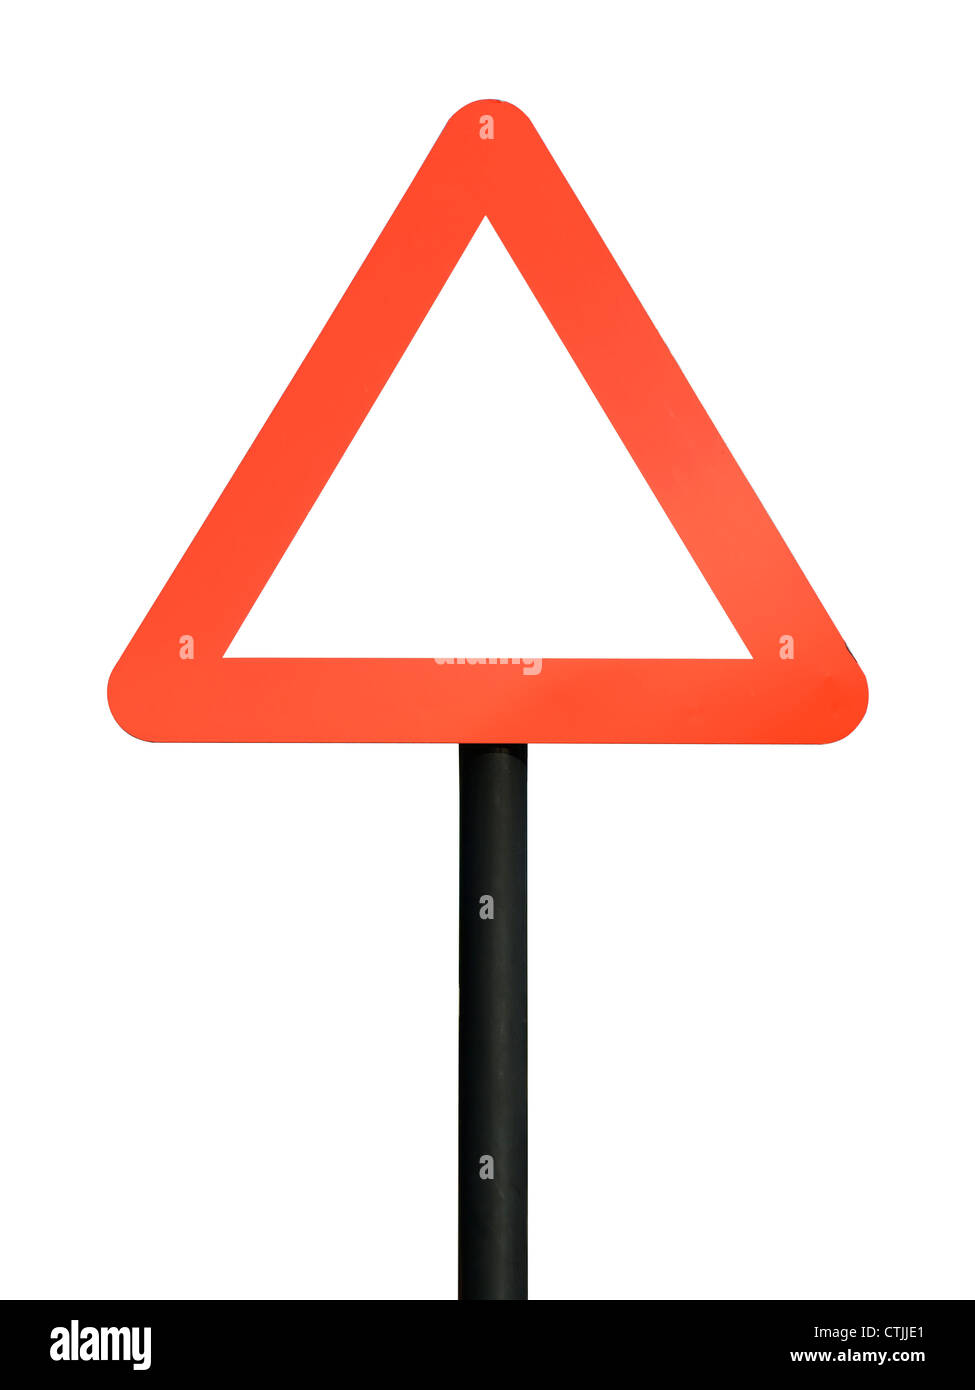 Señal de tráfico triangular en blanco rojo Foto de stock